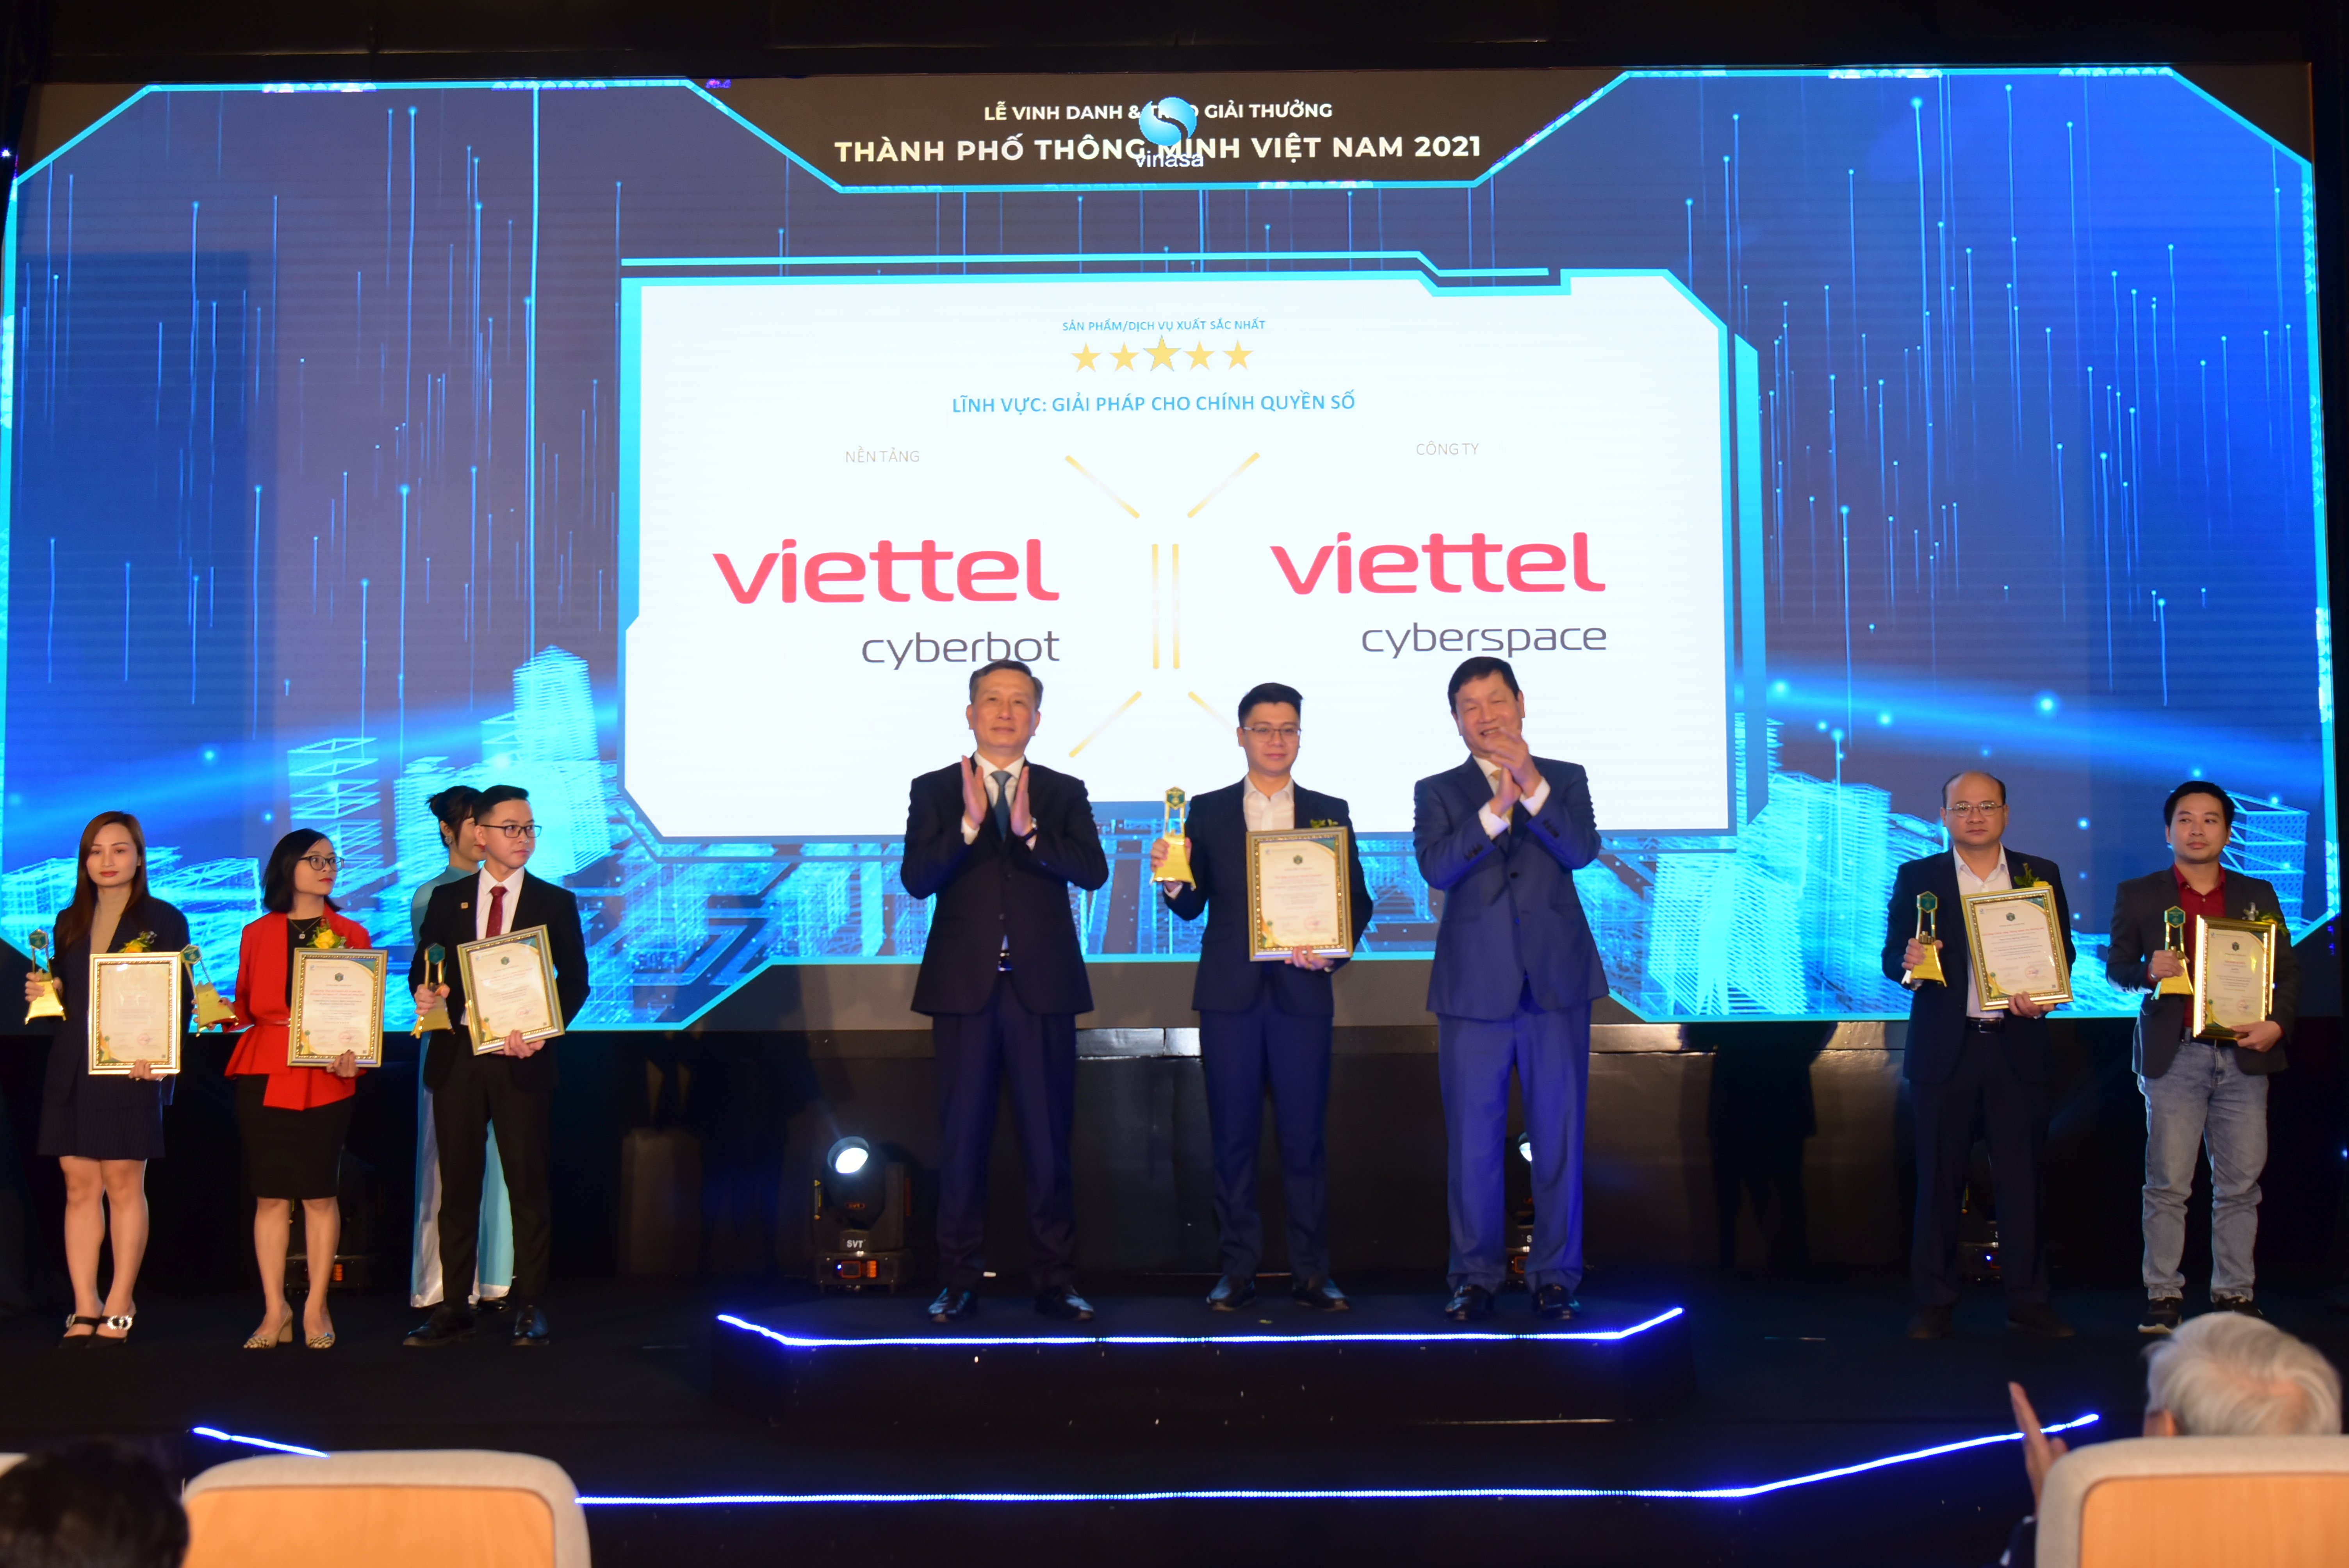 Đại diện Trung tâm Không gian mạng Viettel nhận giải thưởng xuất sắc nhất cho sản phẩm Viettel Cyberbot